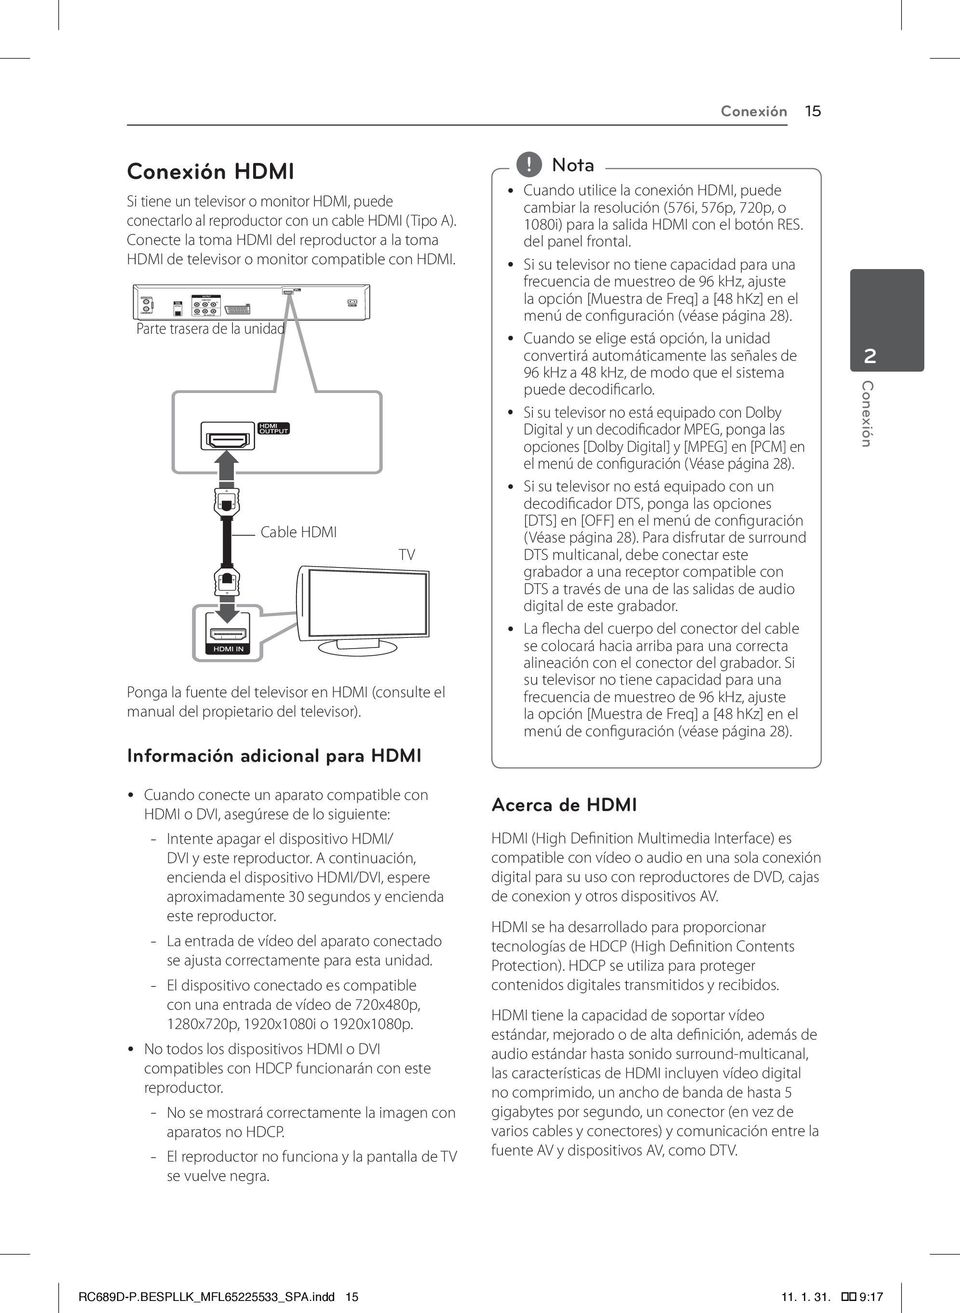 Parte trasera de la unidad Cable HDMI TV Ponga la fuente del televisor en HDMI (consulte el manual del propietario del televisor).